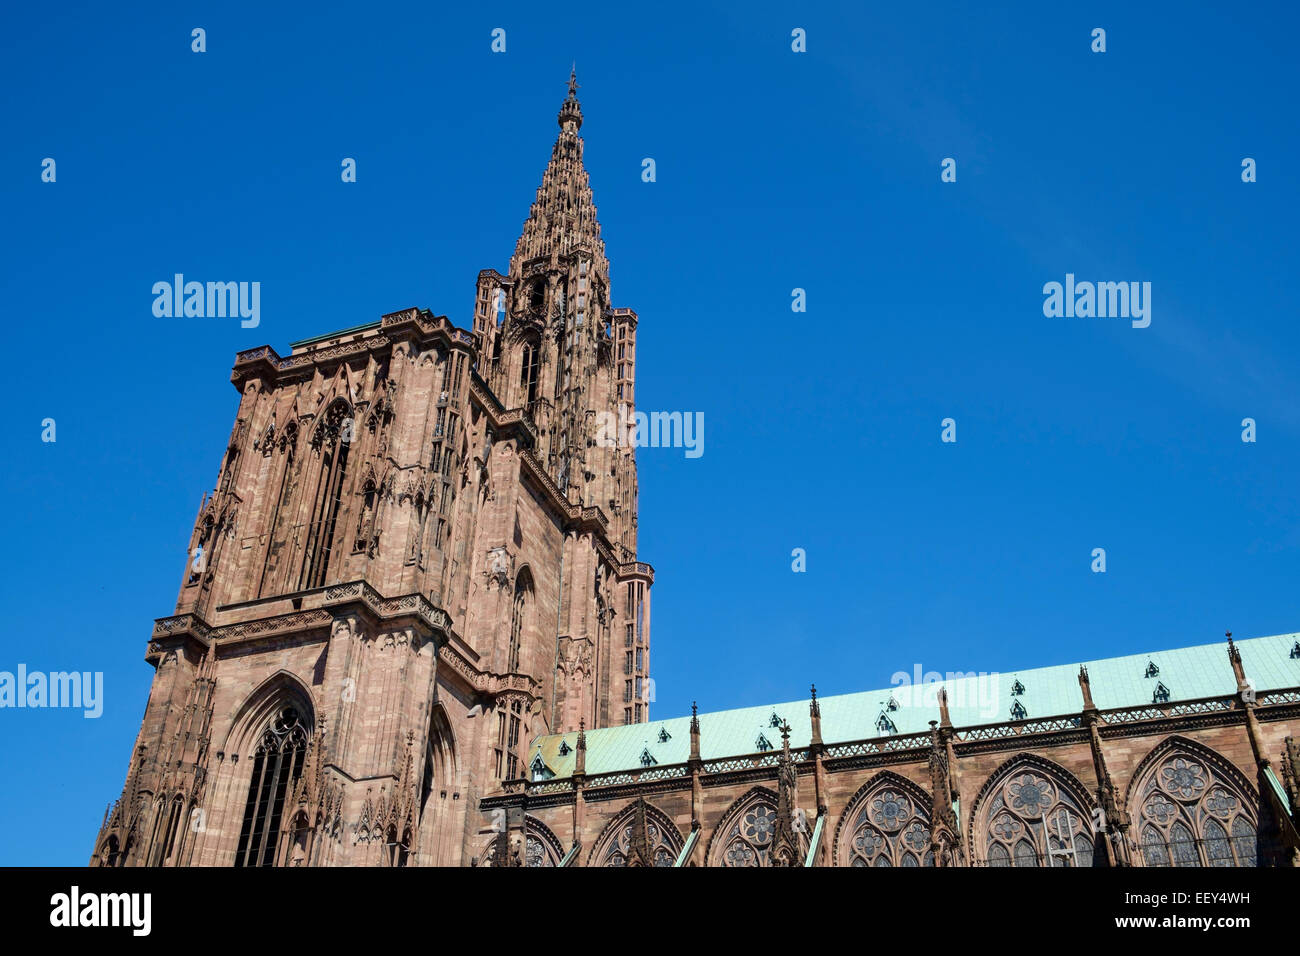 L'architecture de la cathédrale de Strasbourg, Strasbourg, France, Europe Banque D'Images